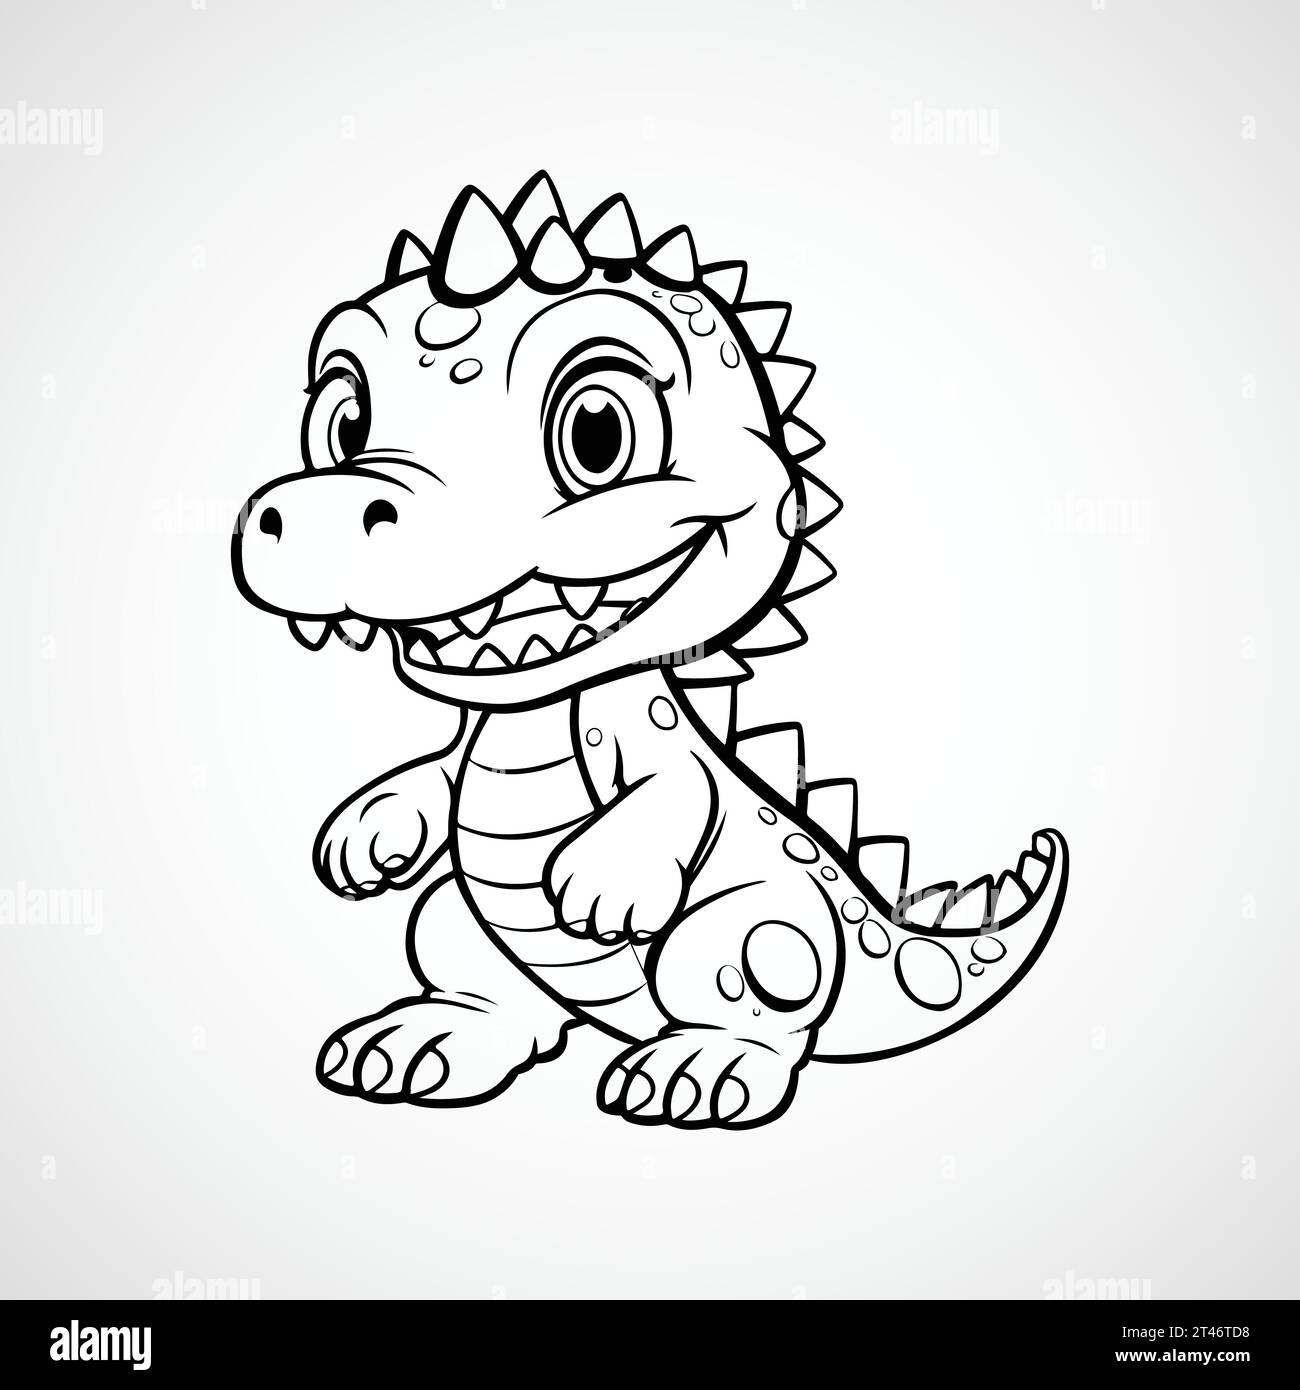 Vector cute dinosaur cartoon illustration Stock Vector